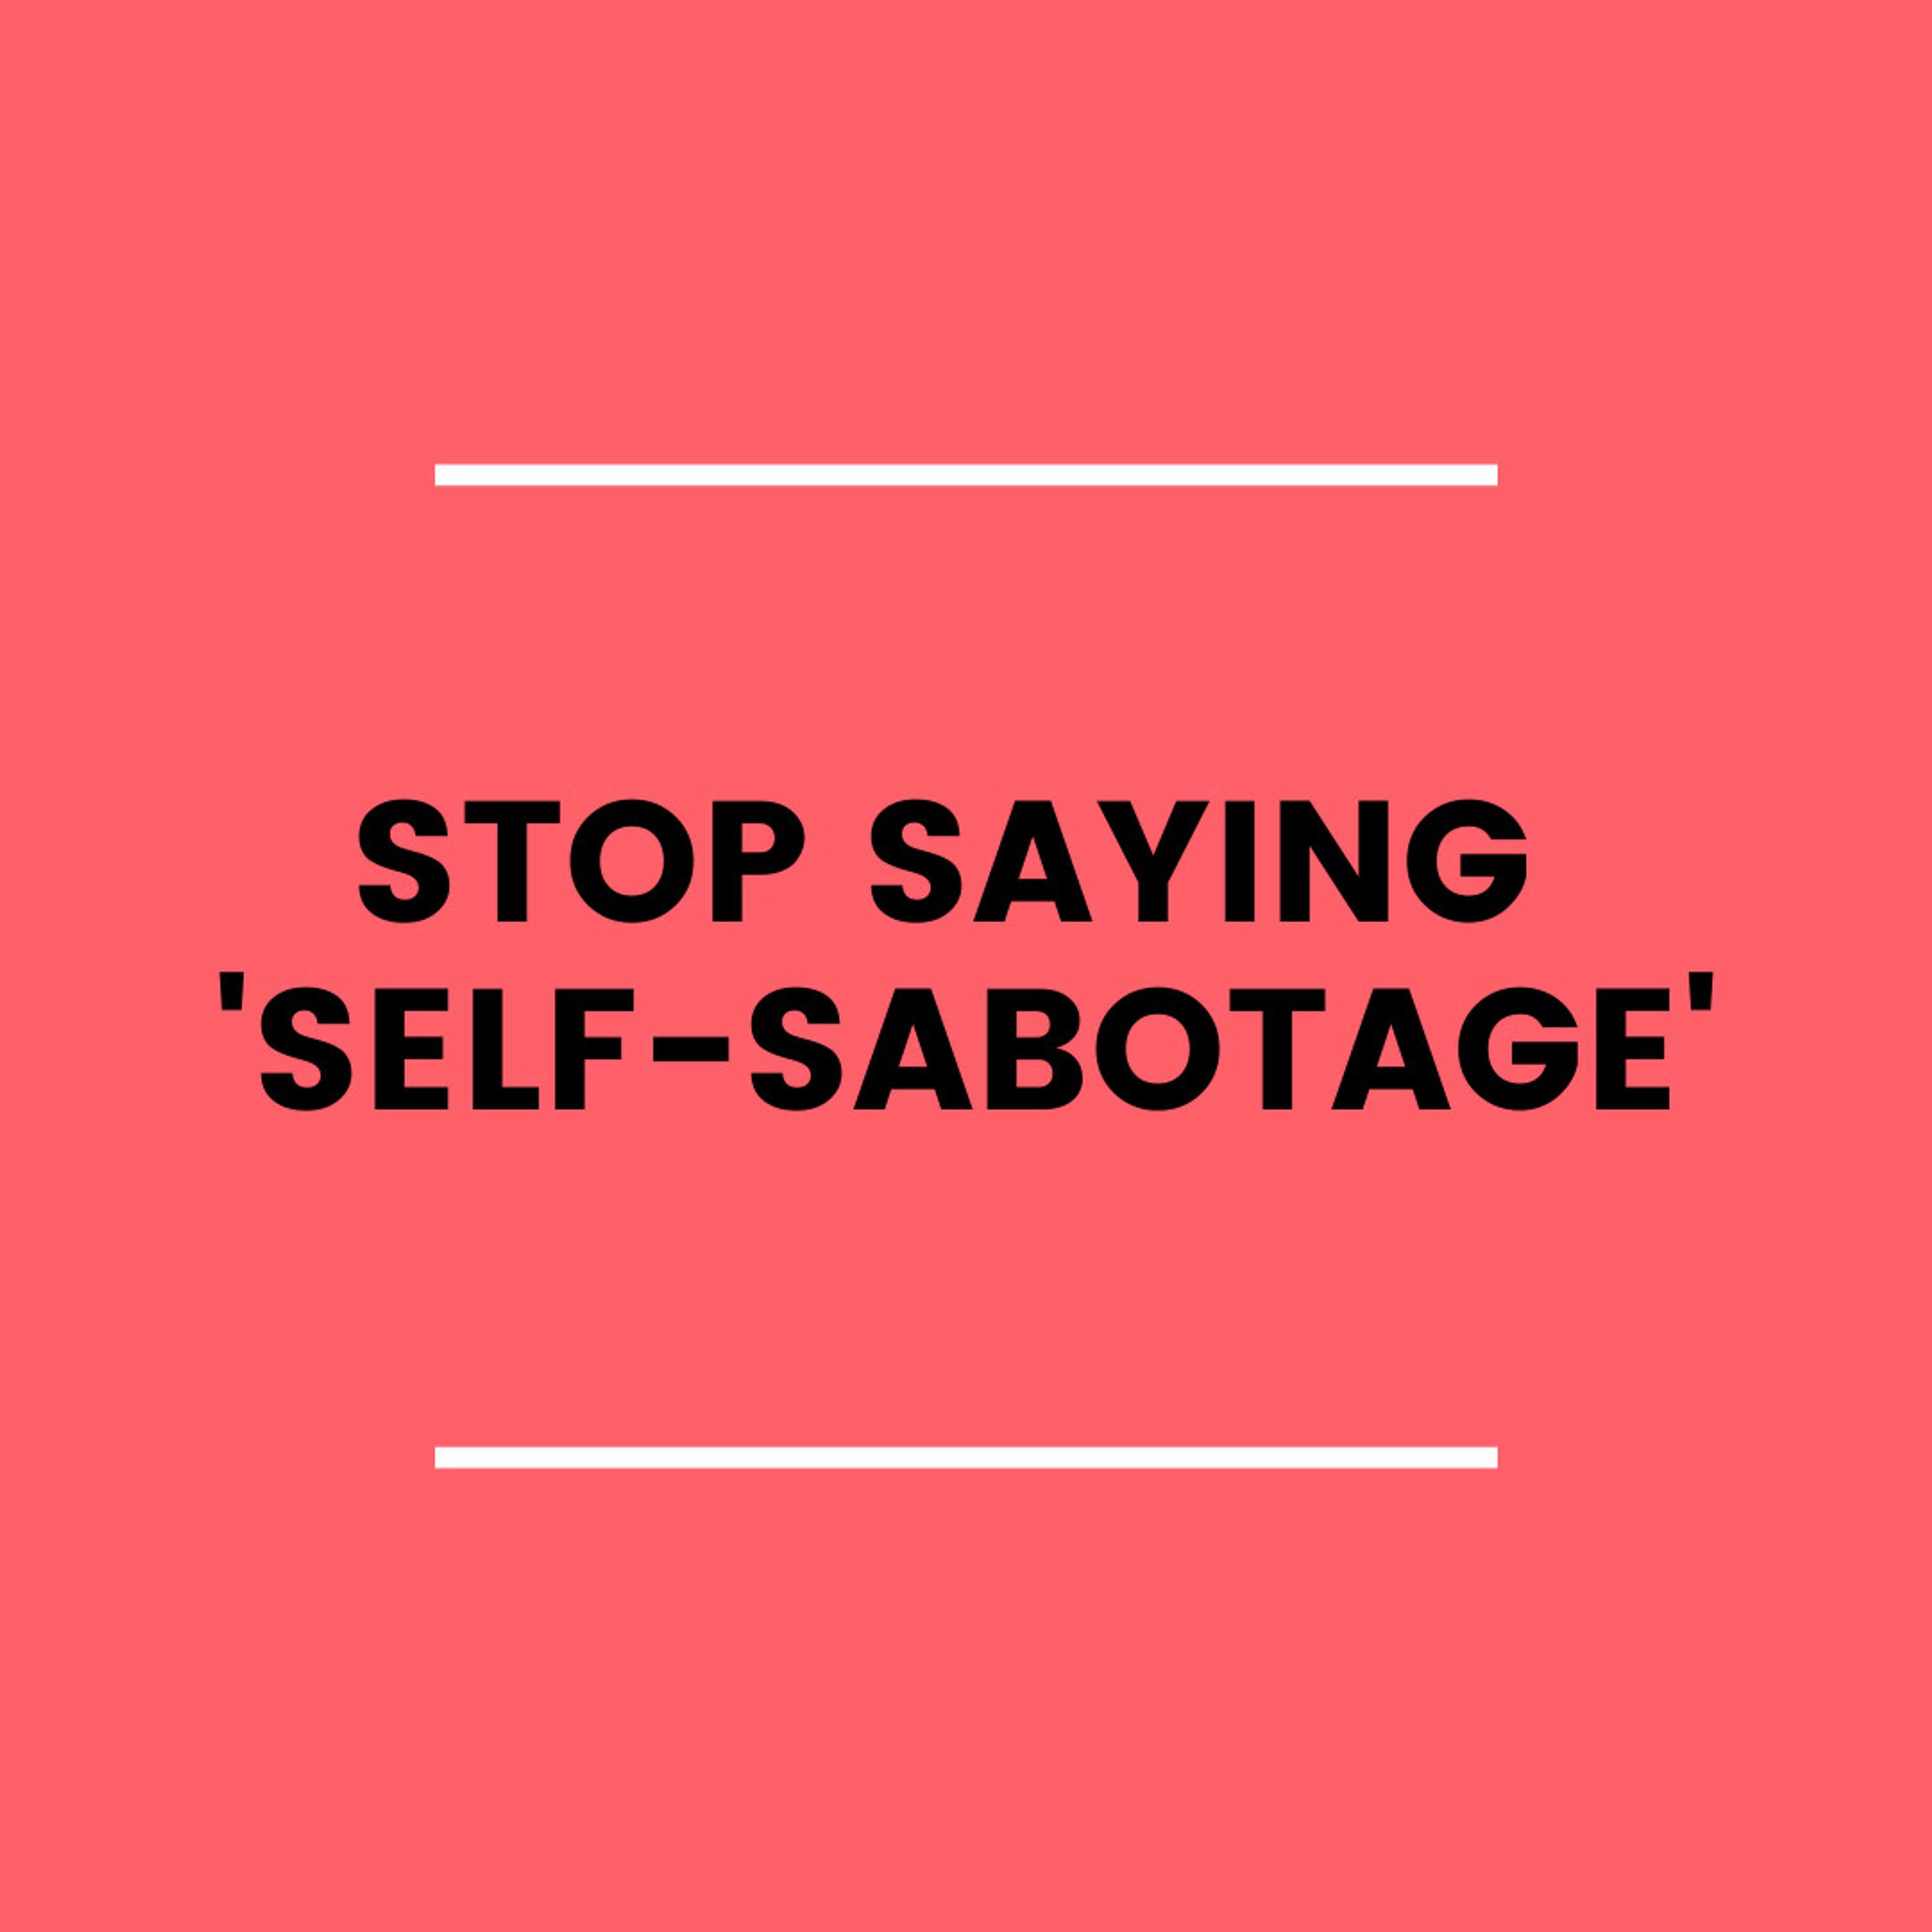 2. Stop Saying 'Self-Sabotage'